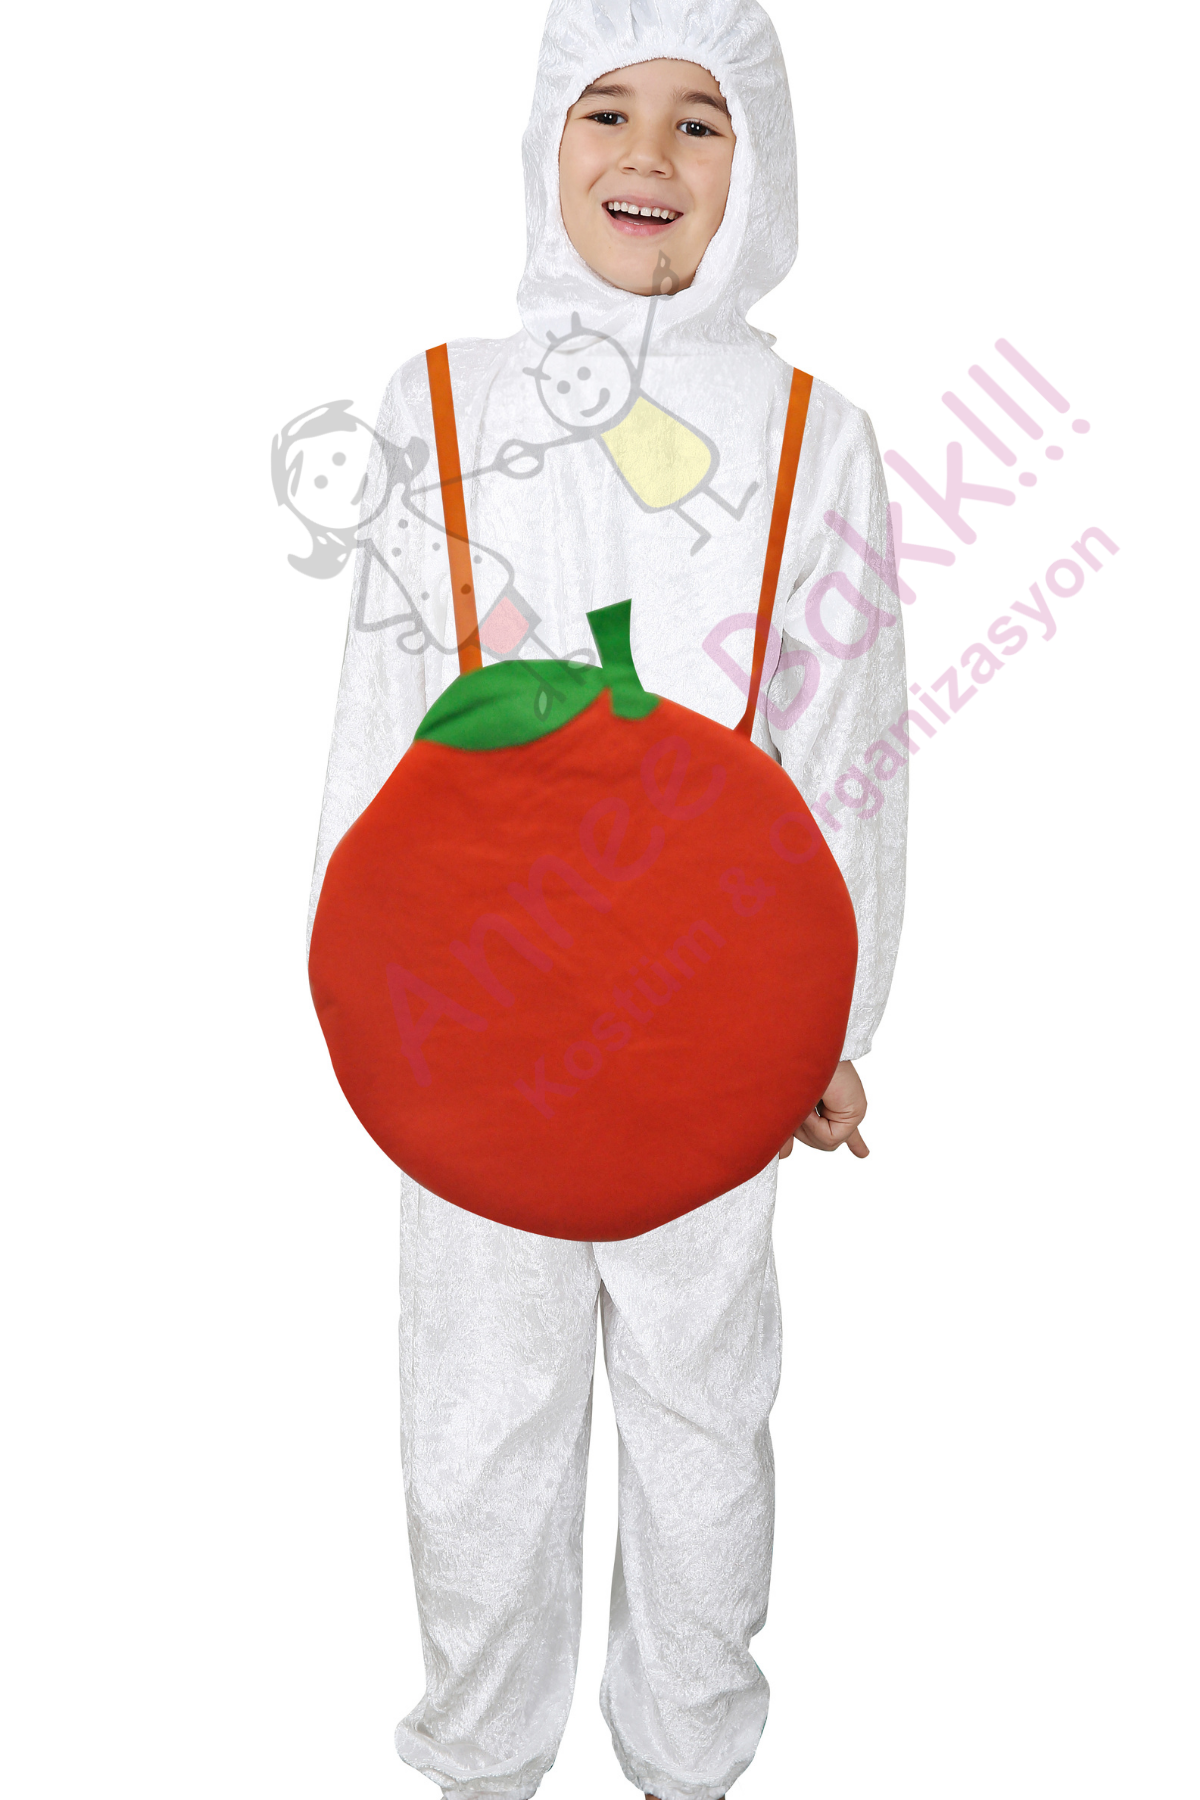 Portakal Çocuk Kostümü, Meyve ve Gıda Kostümleri, Çocuk Portakal Kıyafeti, Hızlı Kargo